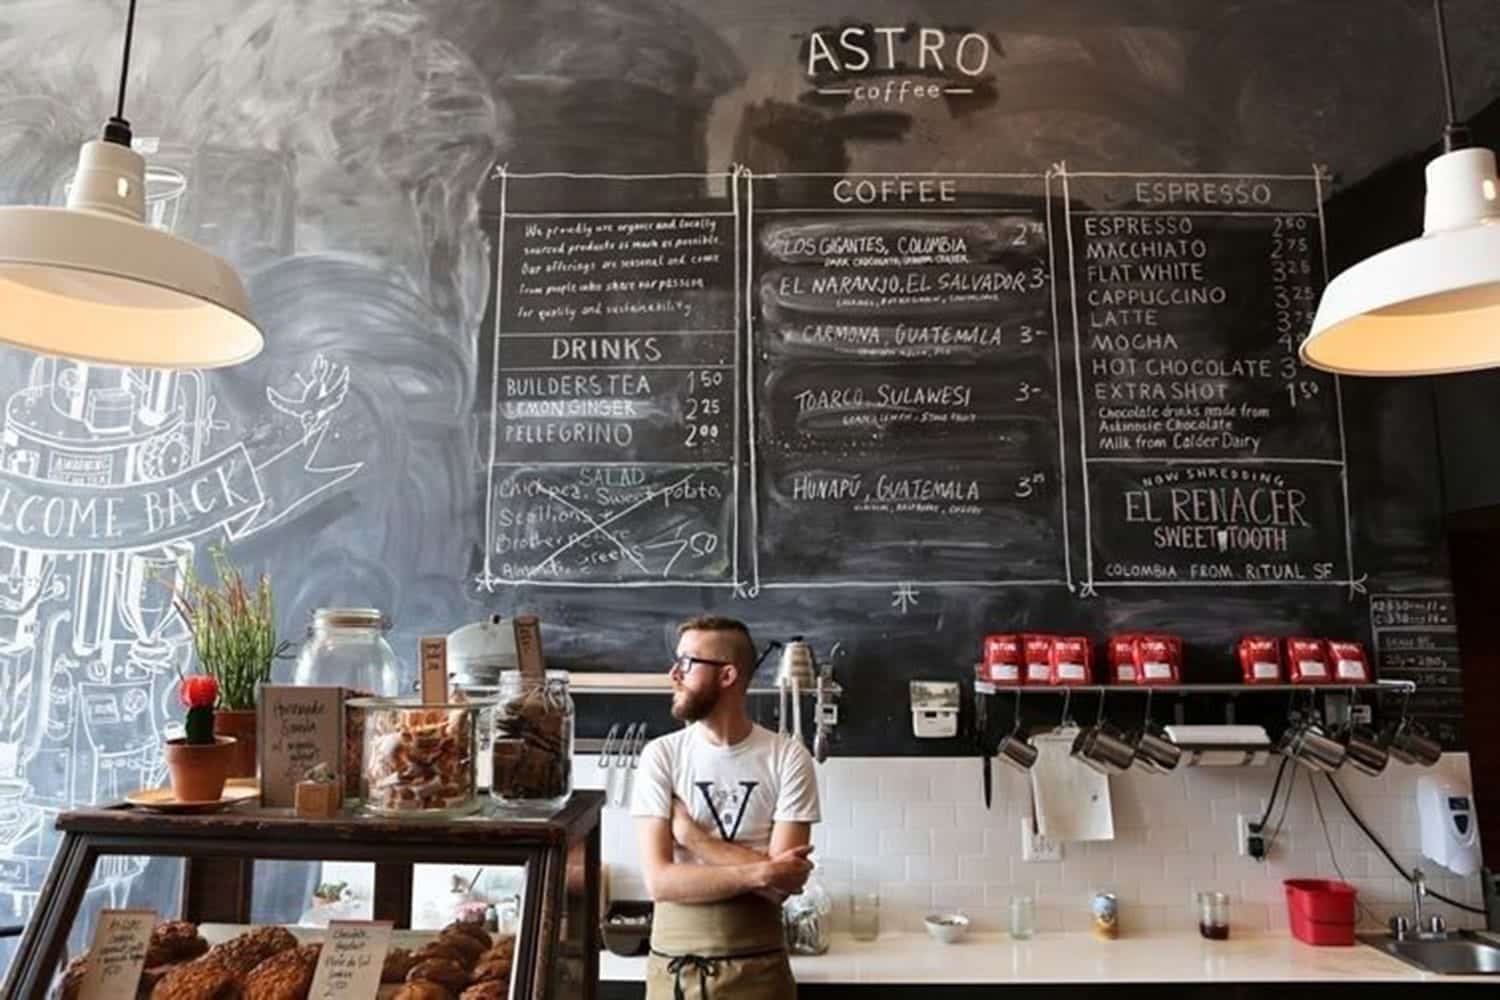 Astro Coffee